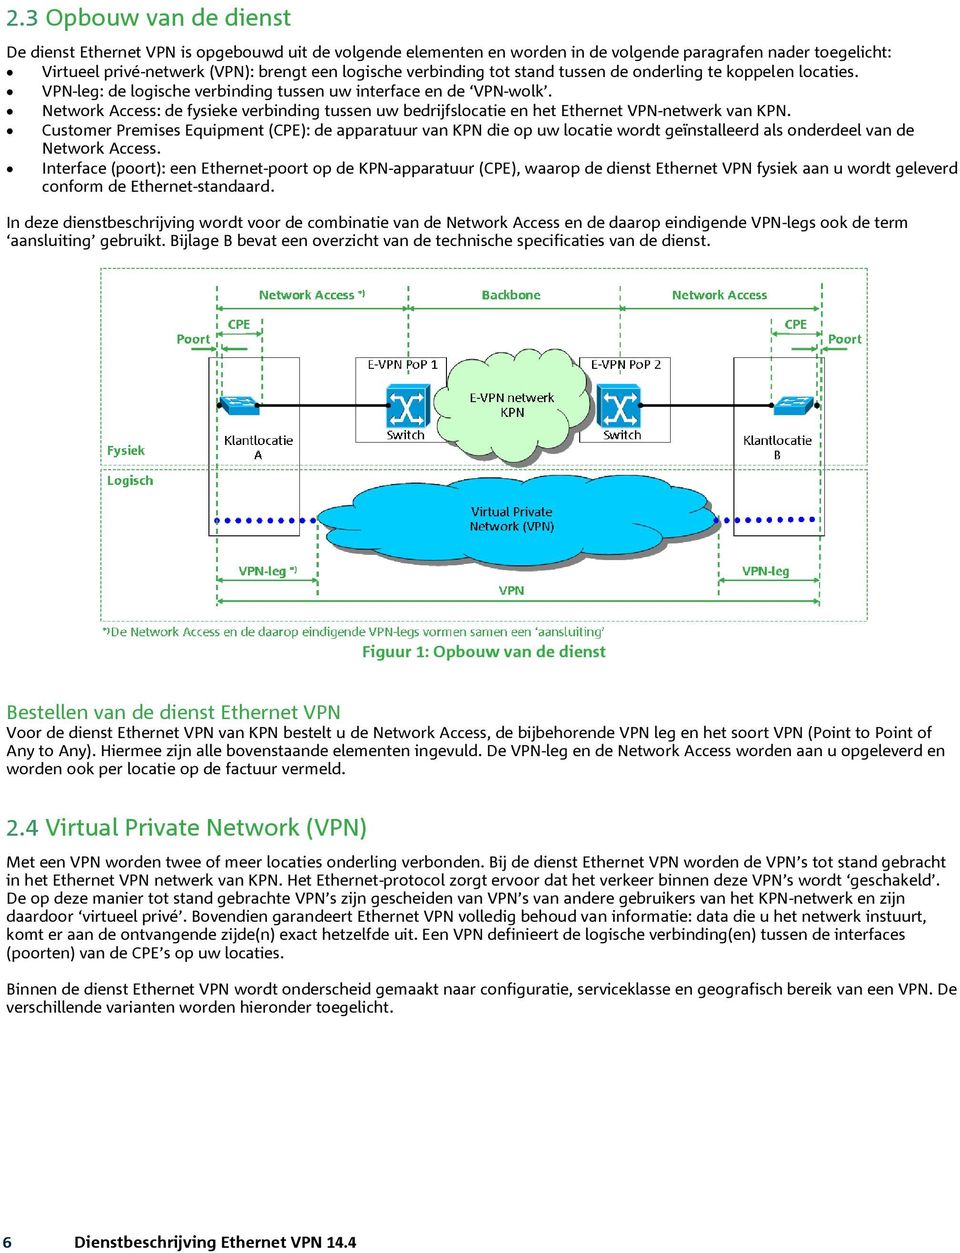 Network Access: de fysieke verbinding tussen uw bedrijfslocatie en het Ethernet VPN-netwerk van KPN.